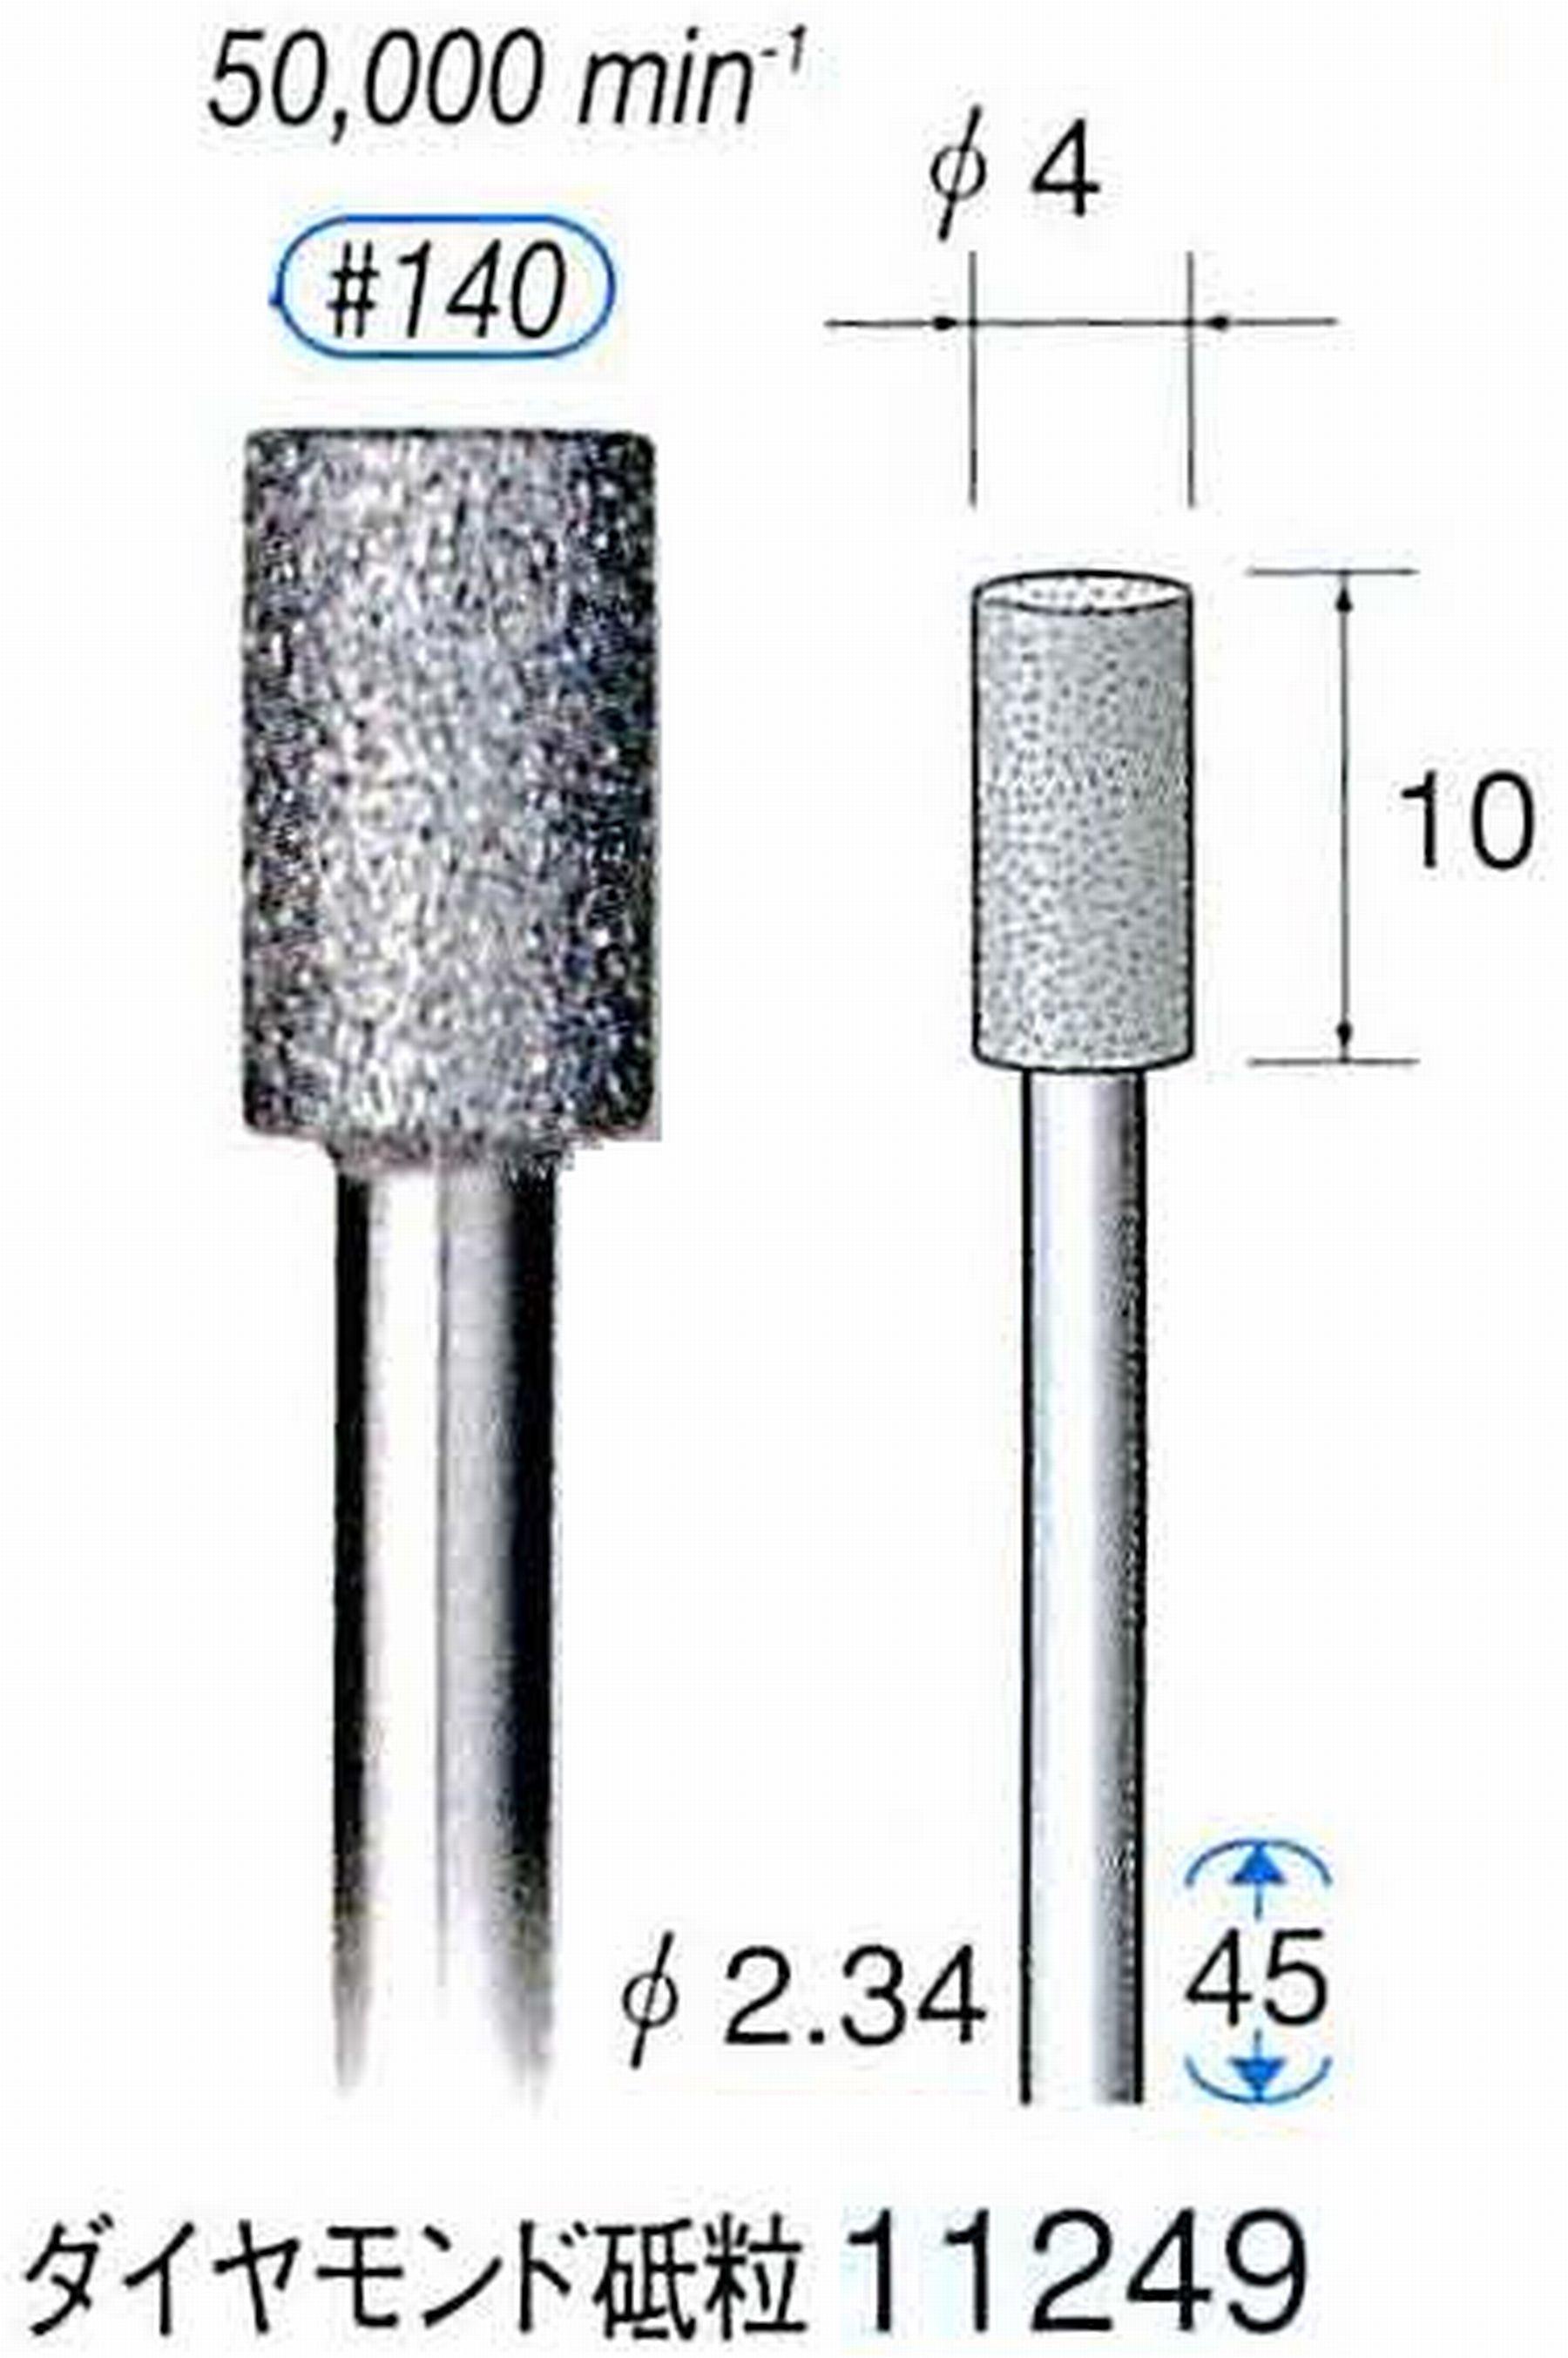 ナカニシ/NAKANISHI 電着ダイヤモンドバー ダイヤモンド砥粒 軸径(シャンク)φ2.34mm 11249